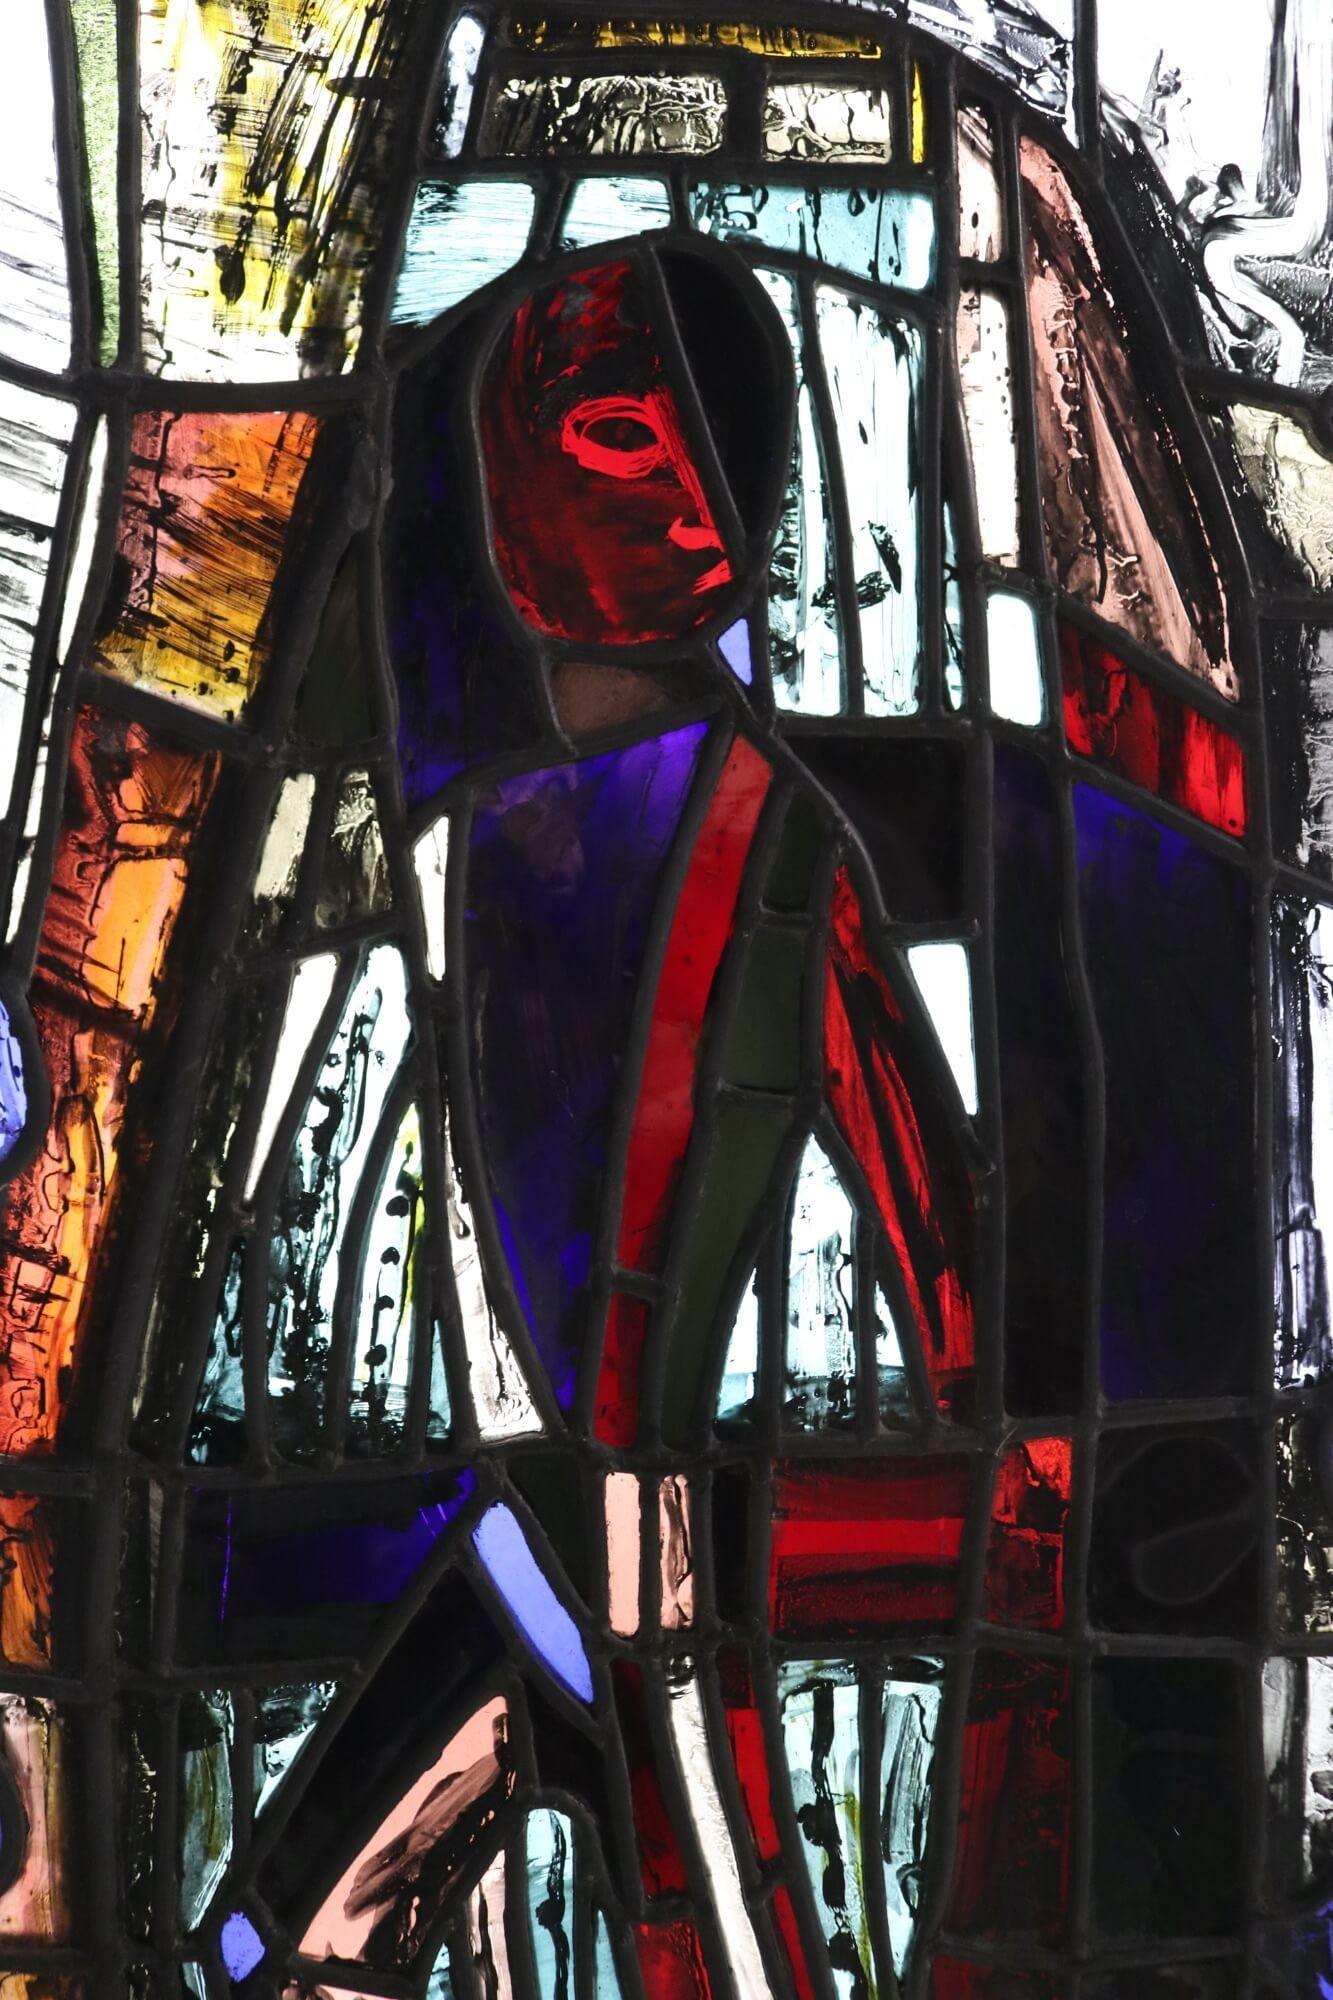 Ein figuratives Glasfenster aus dem Studio von Patrick Reyntiens (1925-2021). Diese dem Künstler zugeschriebene Glasmalerei zeigt ein abstraktes Muster mit handgemalten Details um eine scheinbar zentrale Figur. Es handelt sich um eine von mehreren